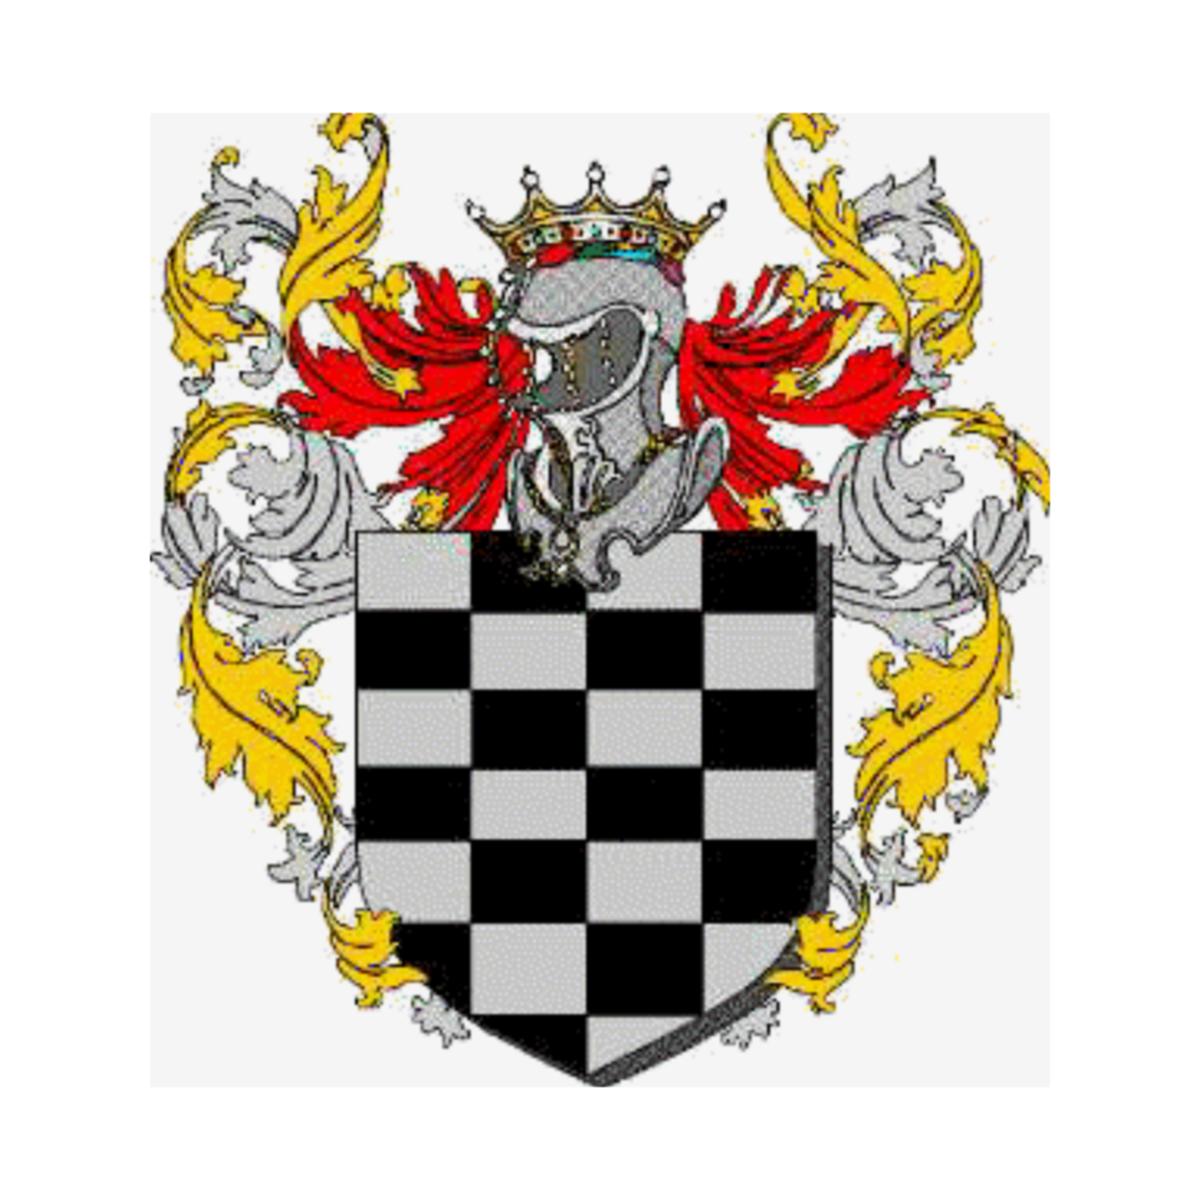 Wappen der FamilieSieripepoli, Regno di Sicilia,Sieripepolo